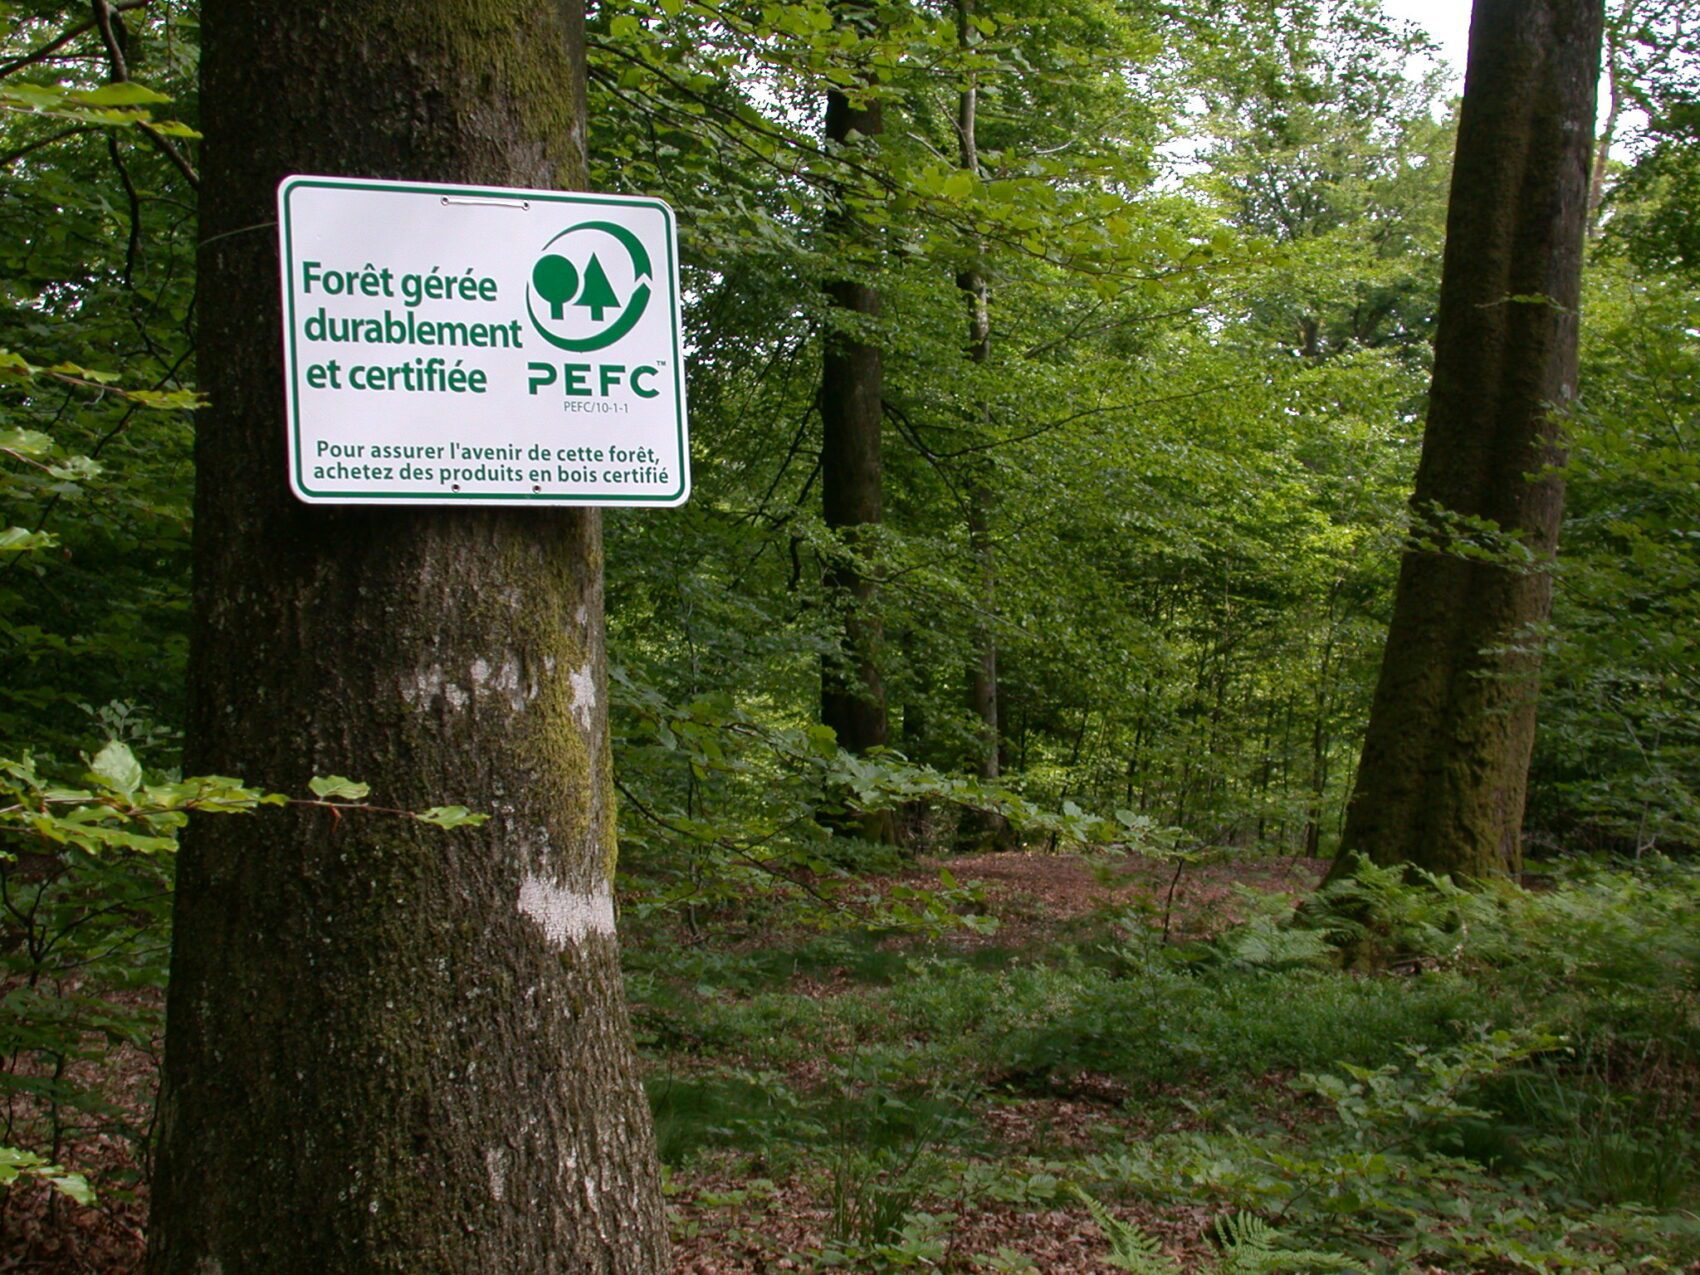 Arbre avec pancarte PEFC. Cette forêt est gérée durablement